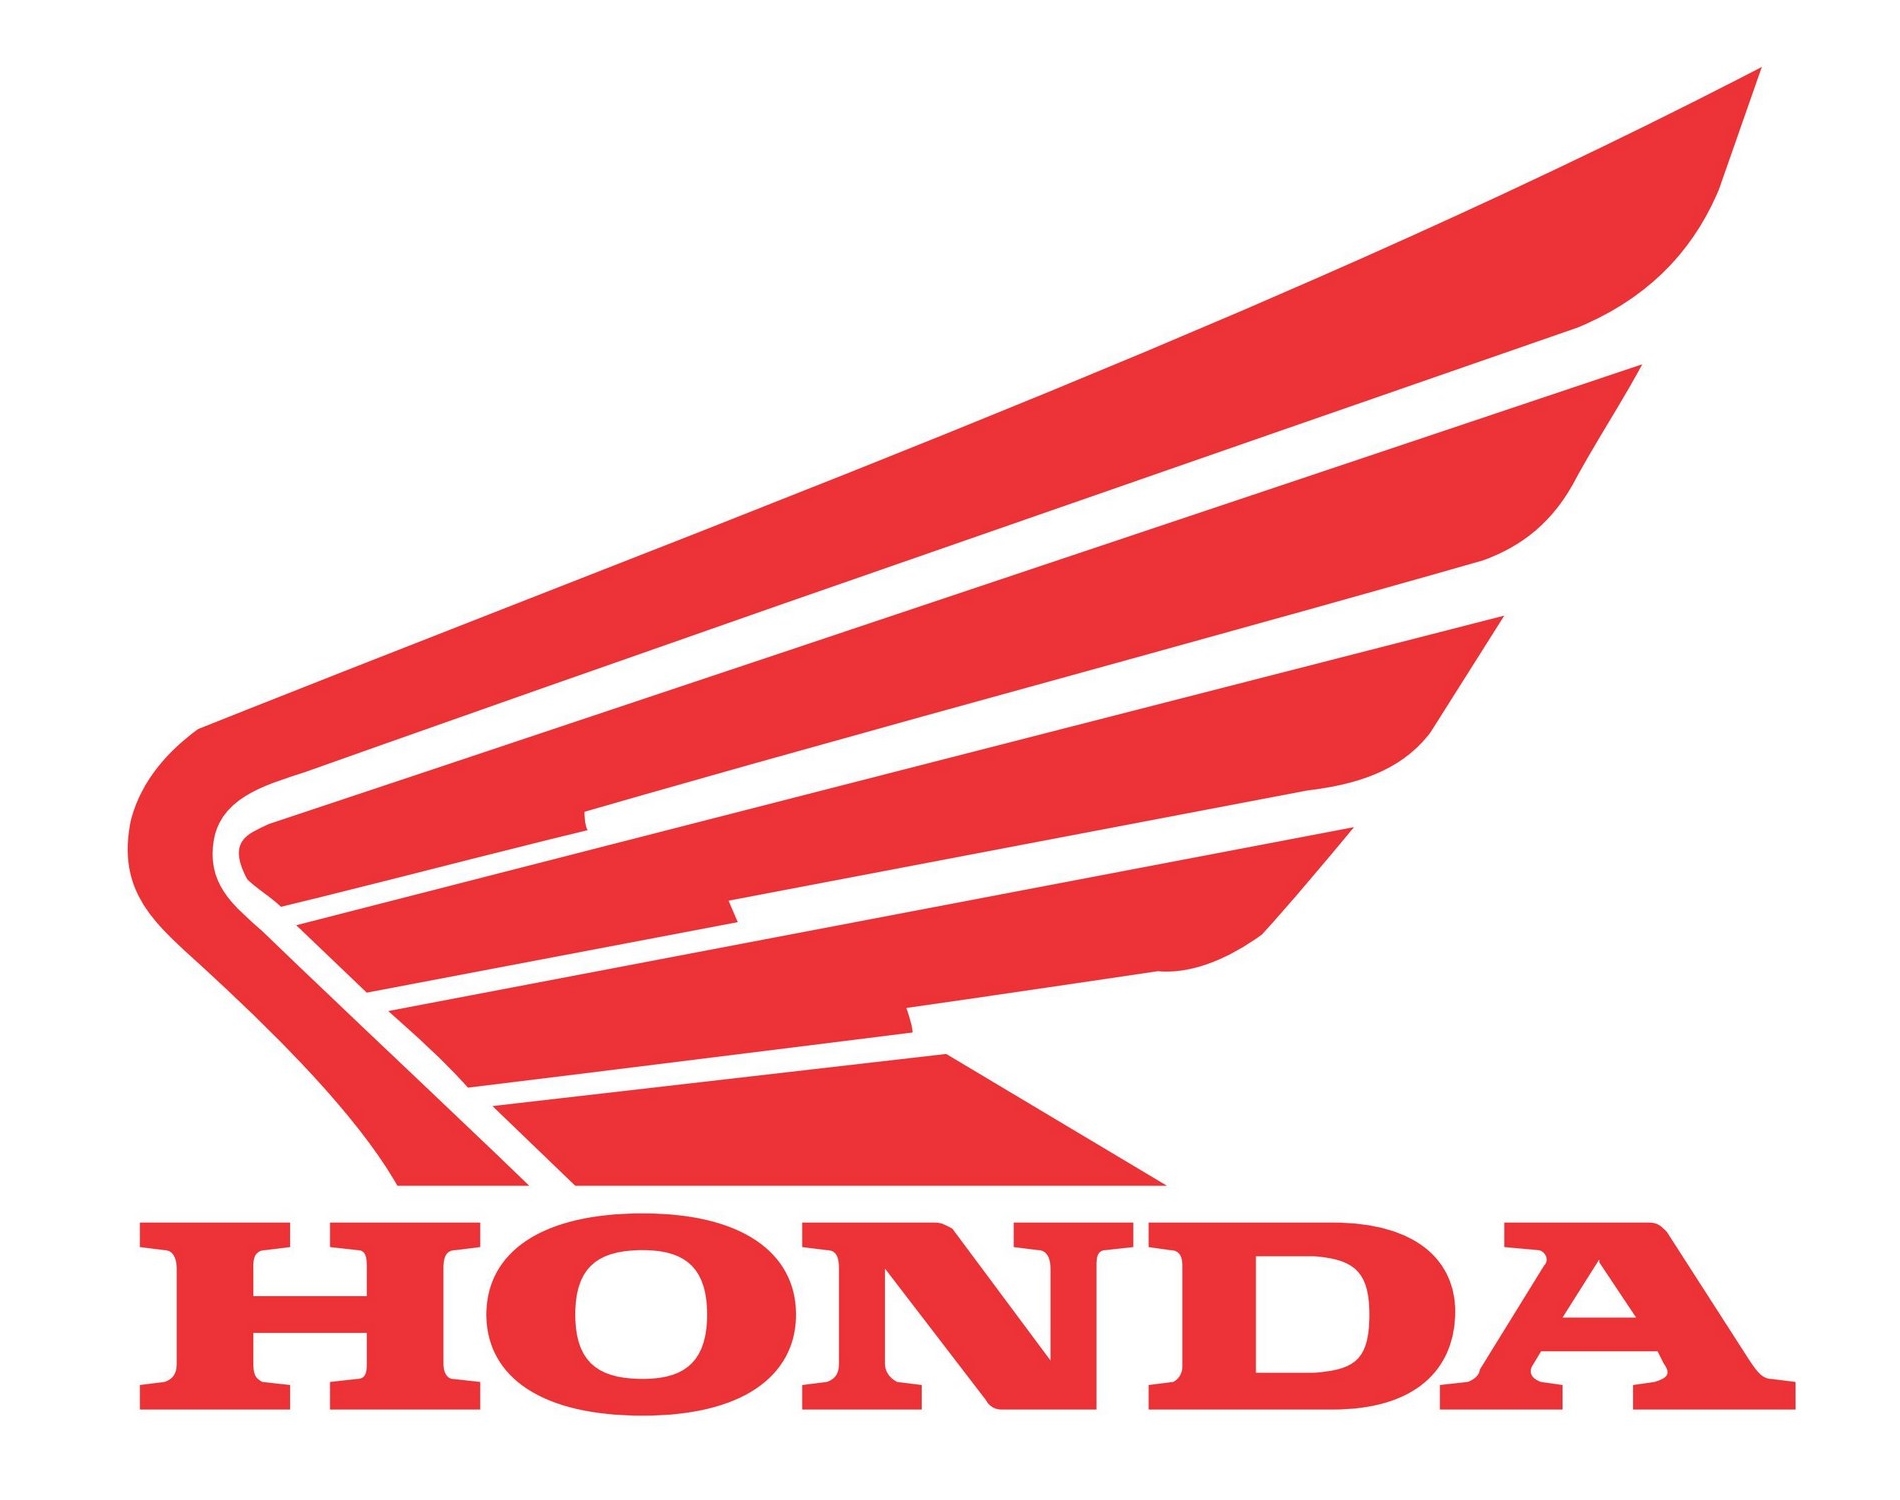  Honda  Logos  Download